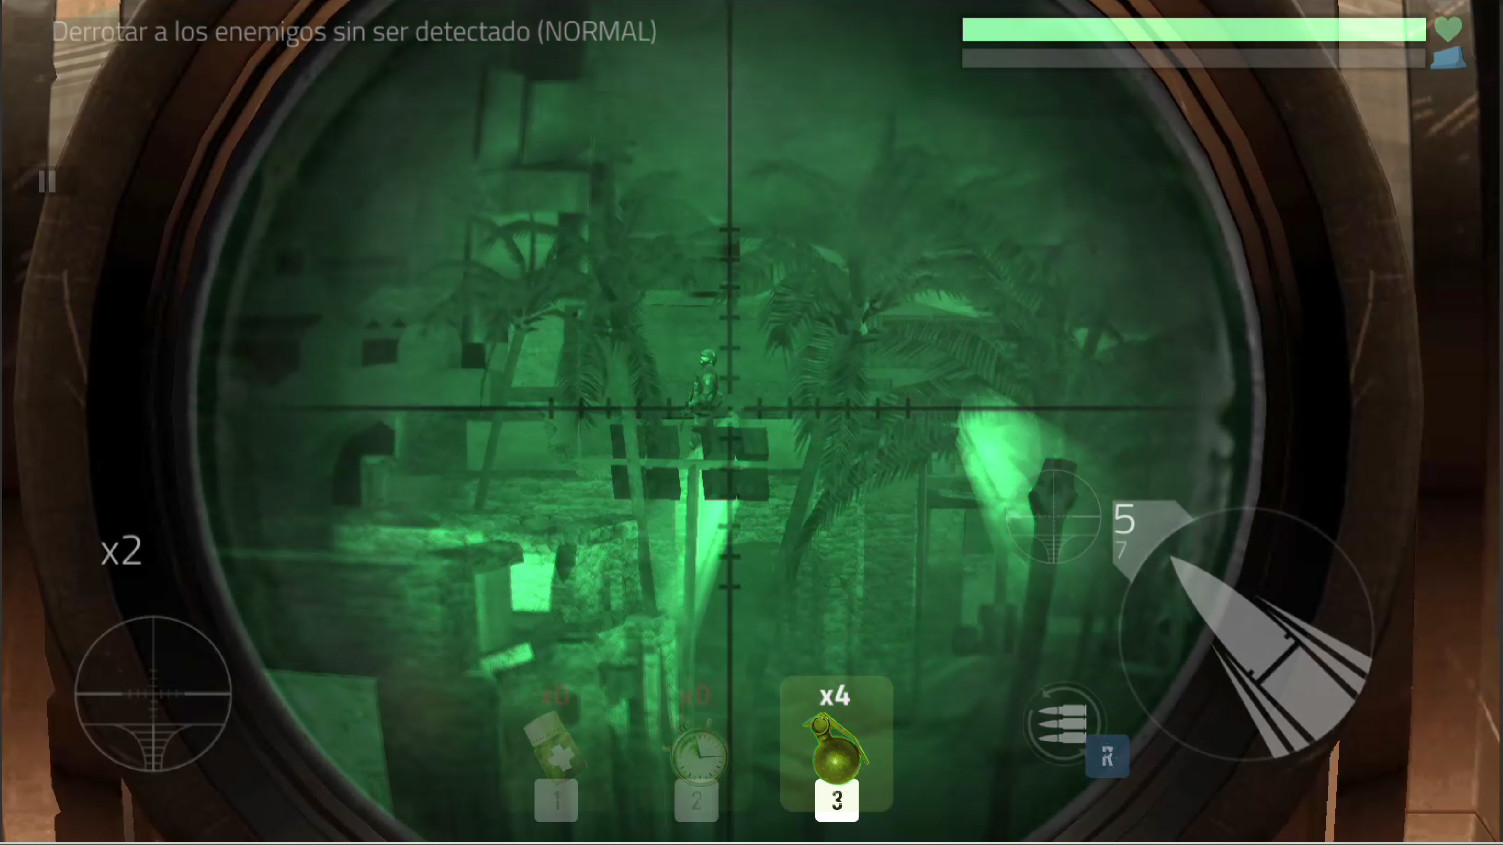 Black Ops Cover Fire Missão de Tiro: Modern Online Grátis